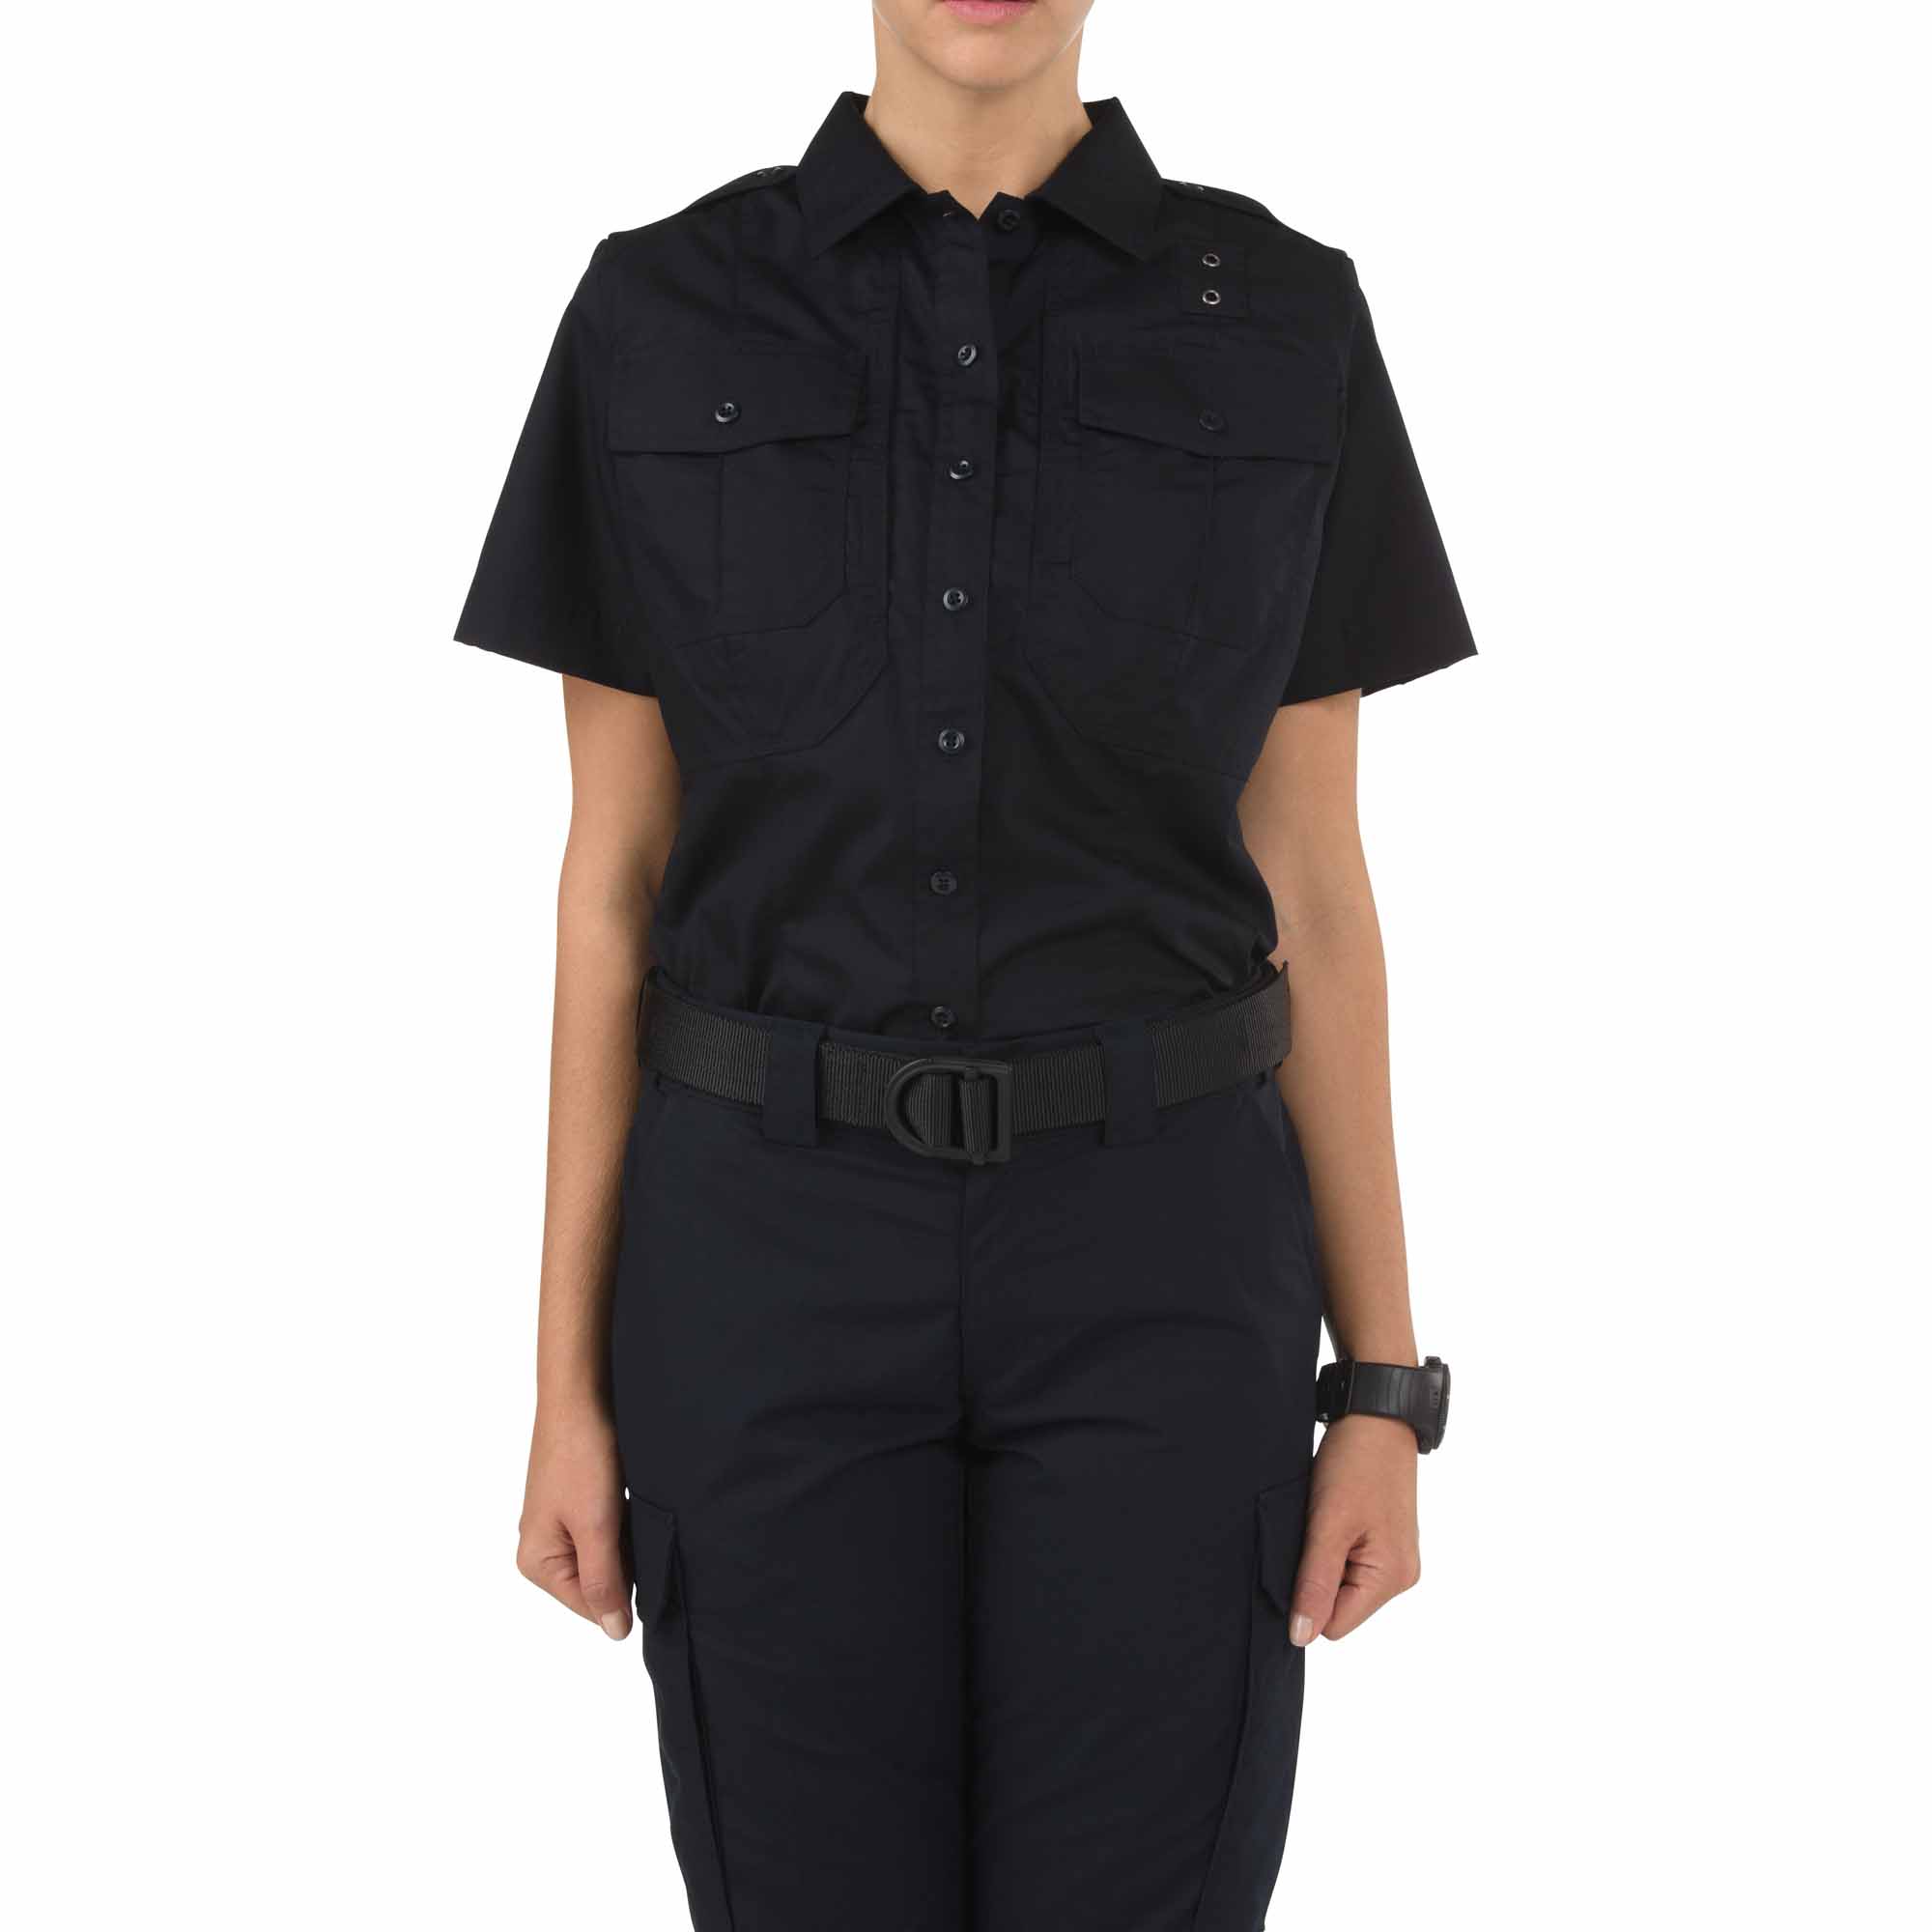 5.11 Tactical Womenâ s Taclite Pdu Class-B Short Sleeve Shirt-